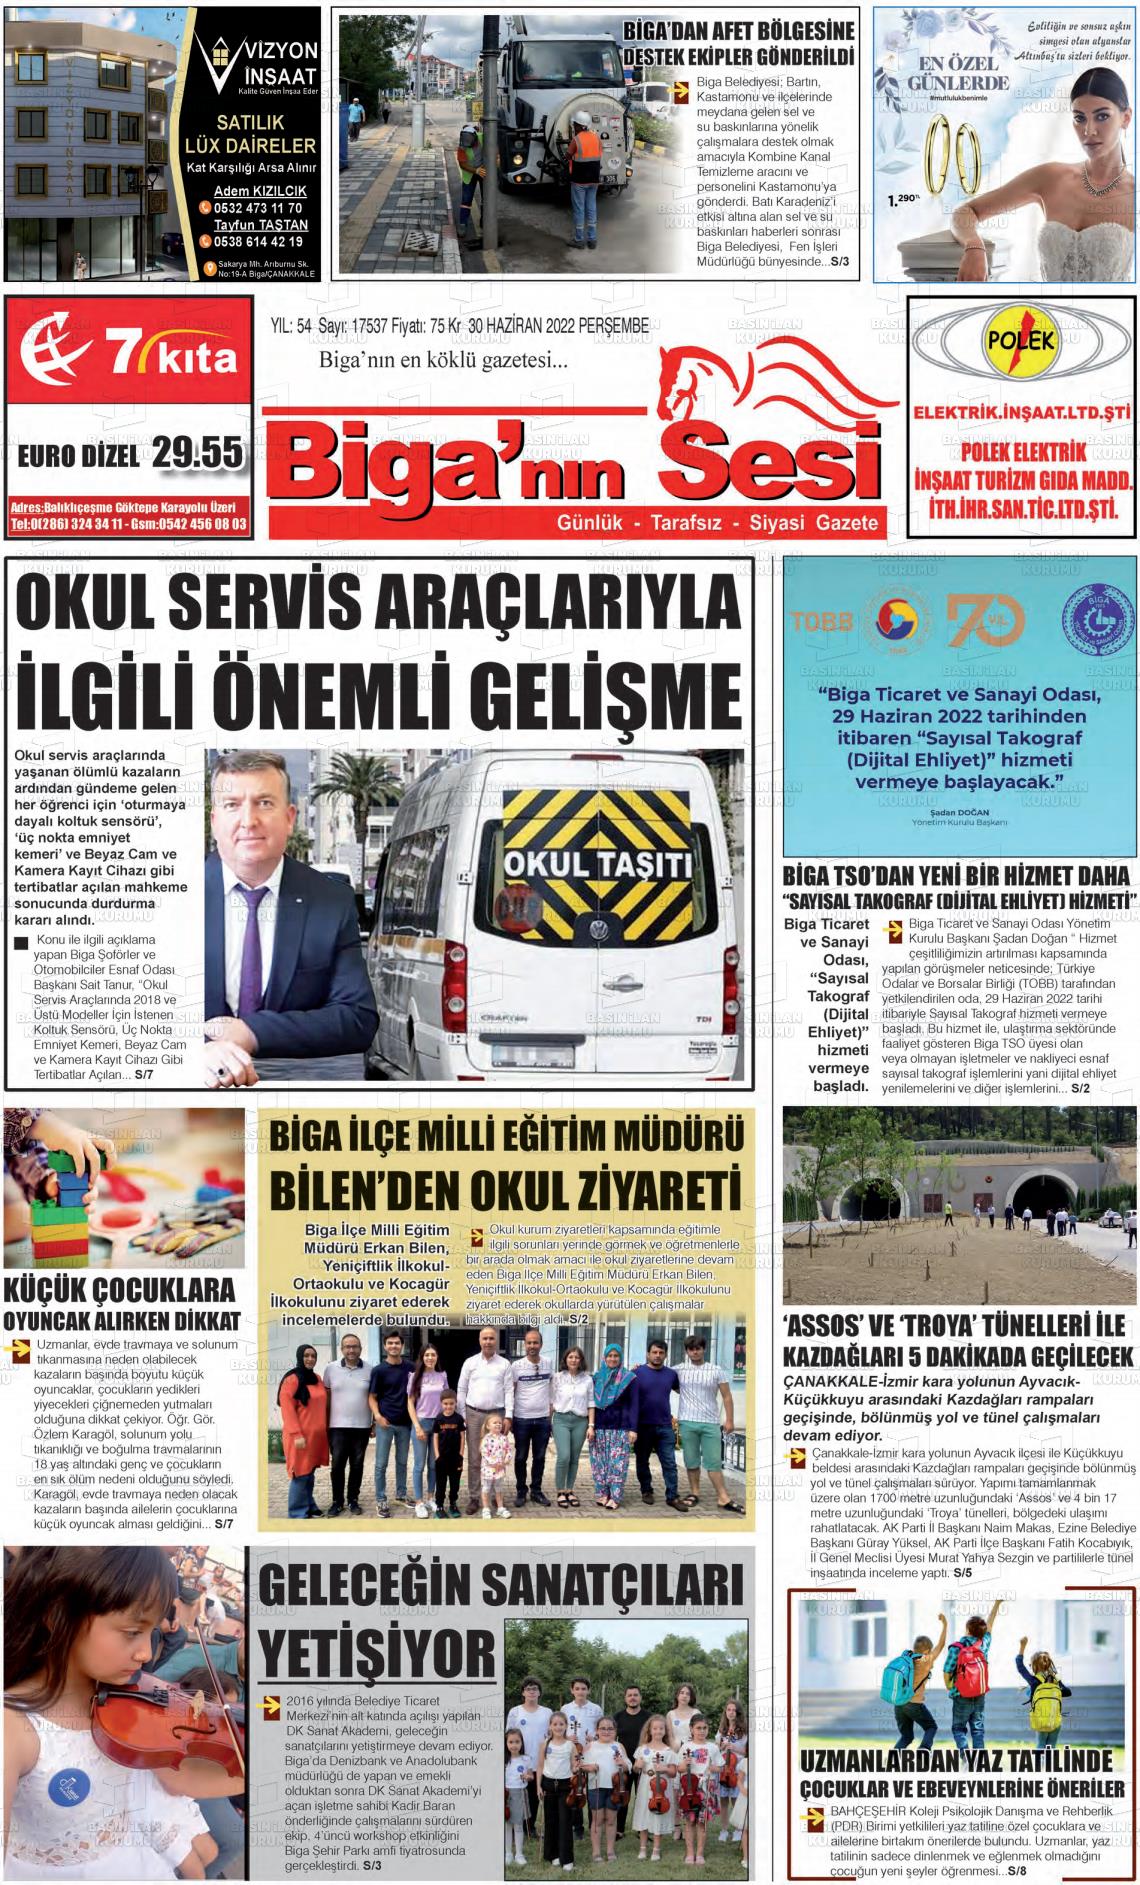 01 Temmuz 2022 Biga'nın Sesi Gazete Manşeti